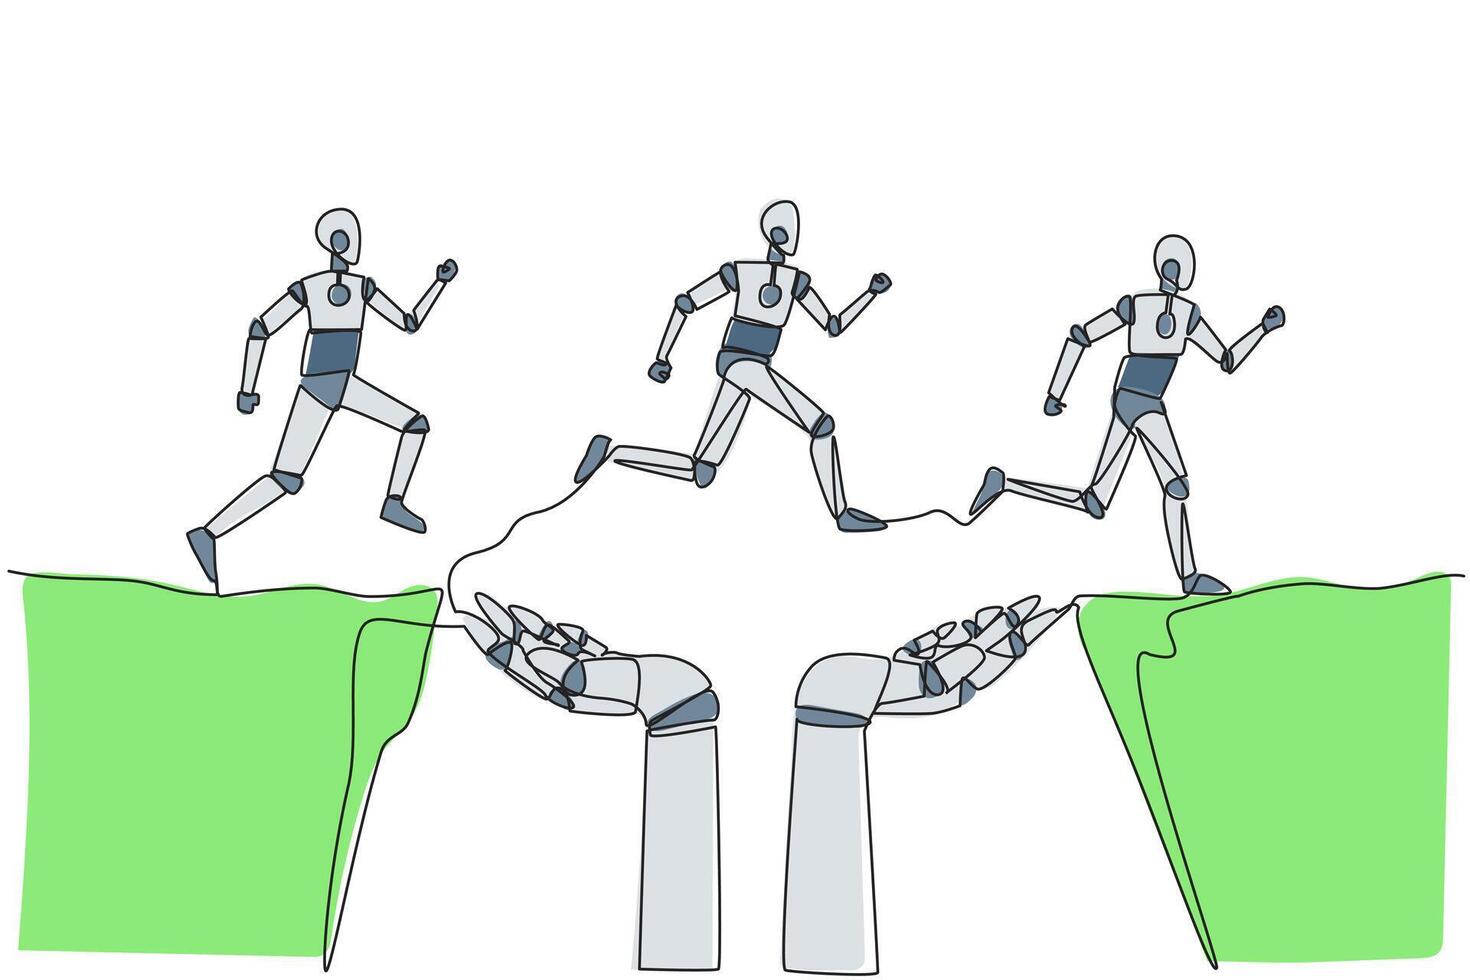 Single kontinuierlich Linie Zeichnung drei Roboter Laufen durch ein Cliff Das hat Loch im das Mitte aber ist unterstützt durch groß Roboter Hand. tun Zusammenarbeit gegenüber besser Richtung. einer Linie Vektor Illustration